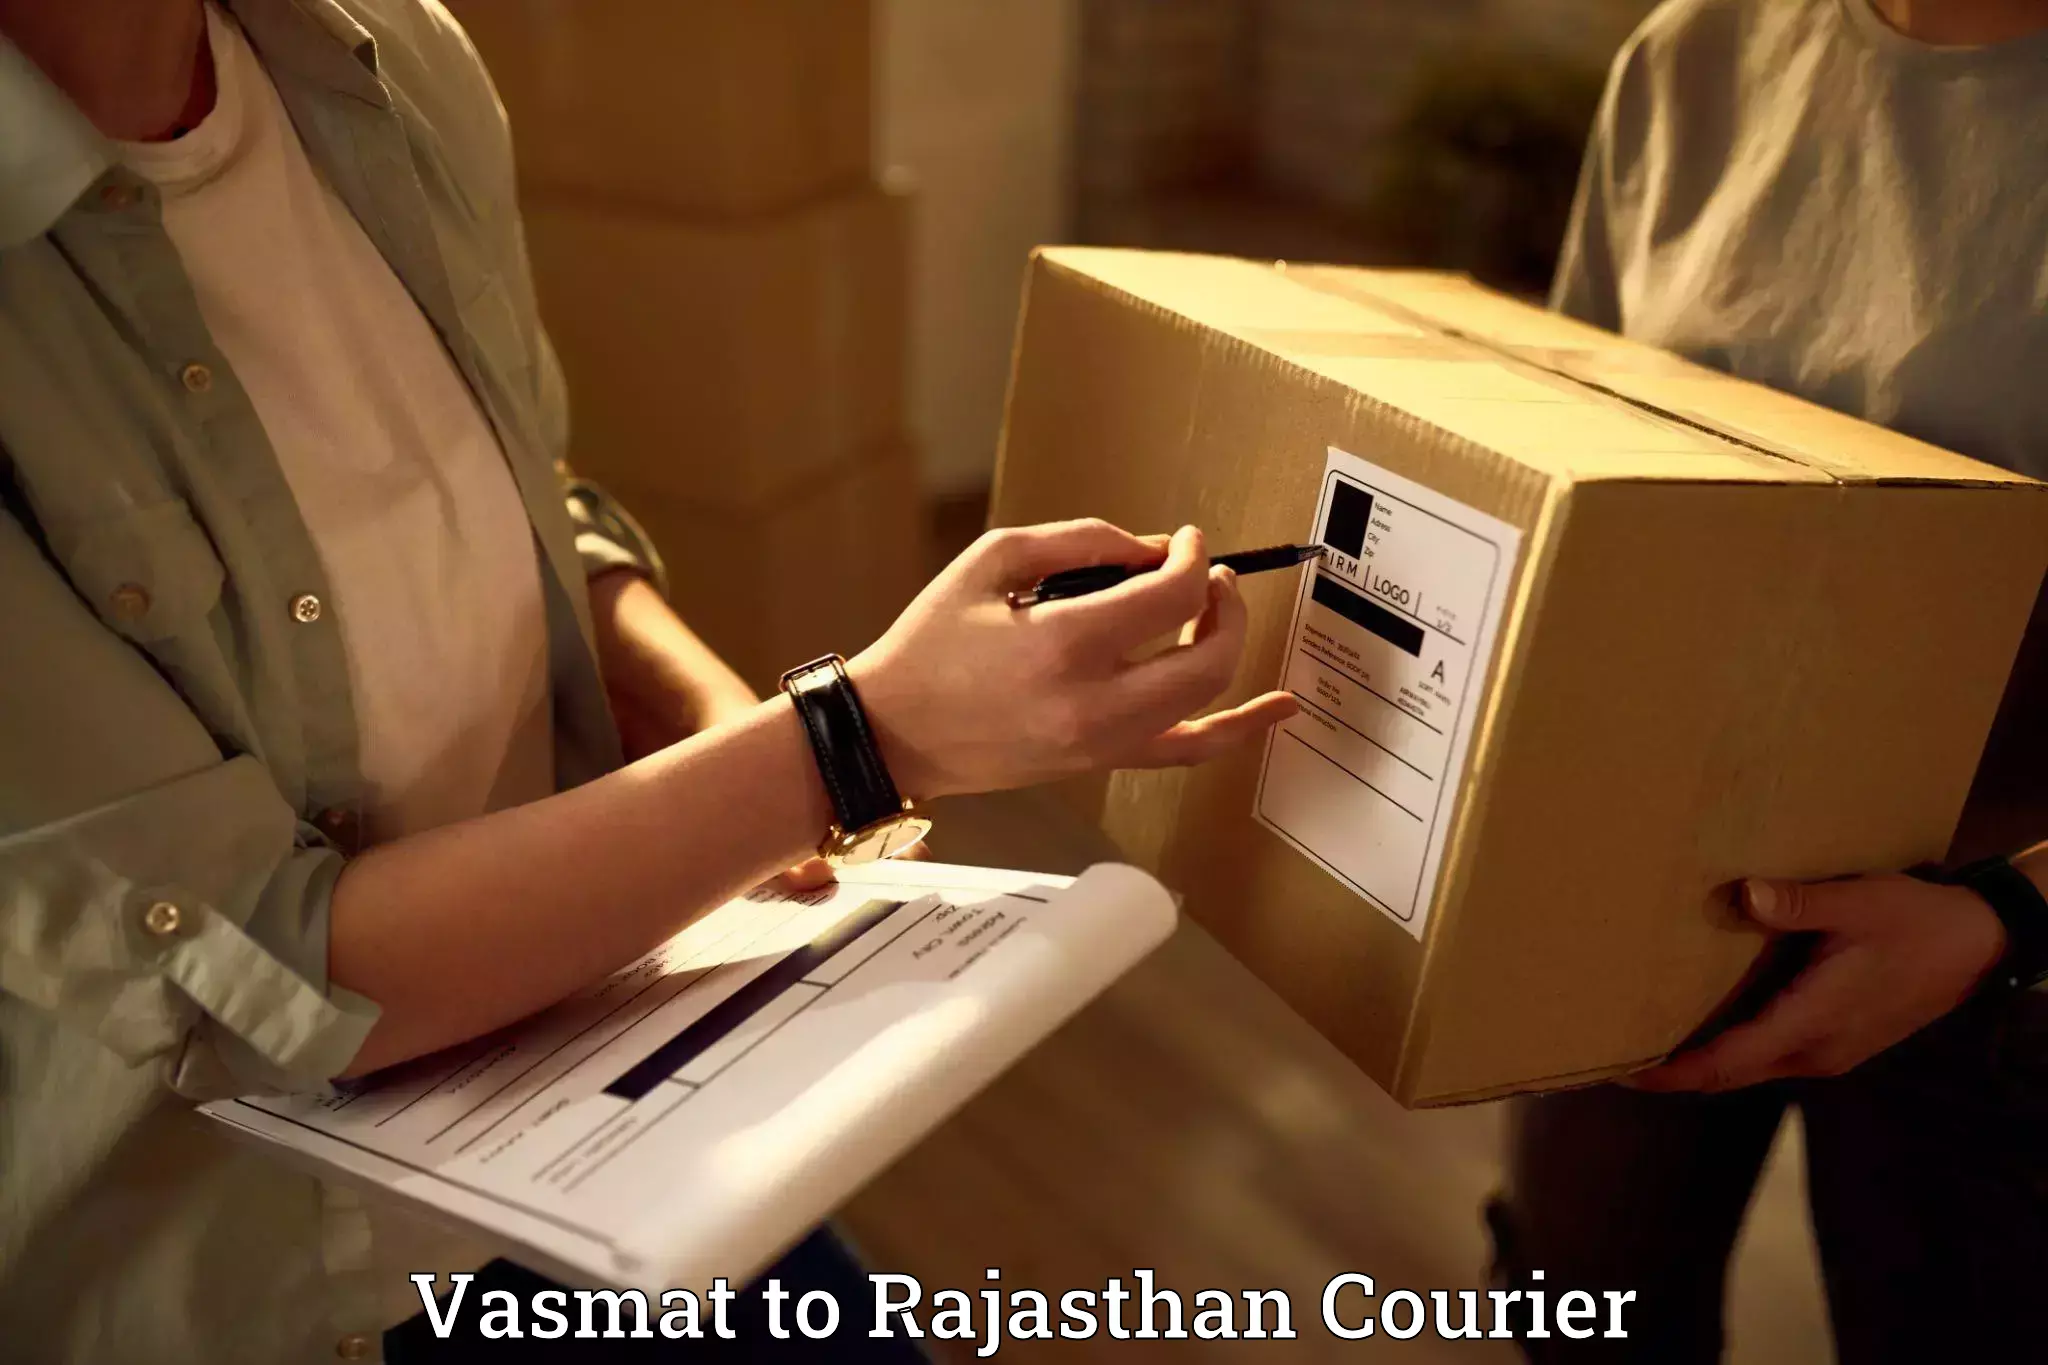 Furniture transport services Vasmat to Jaipur